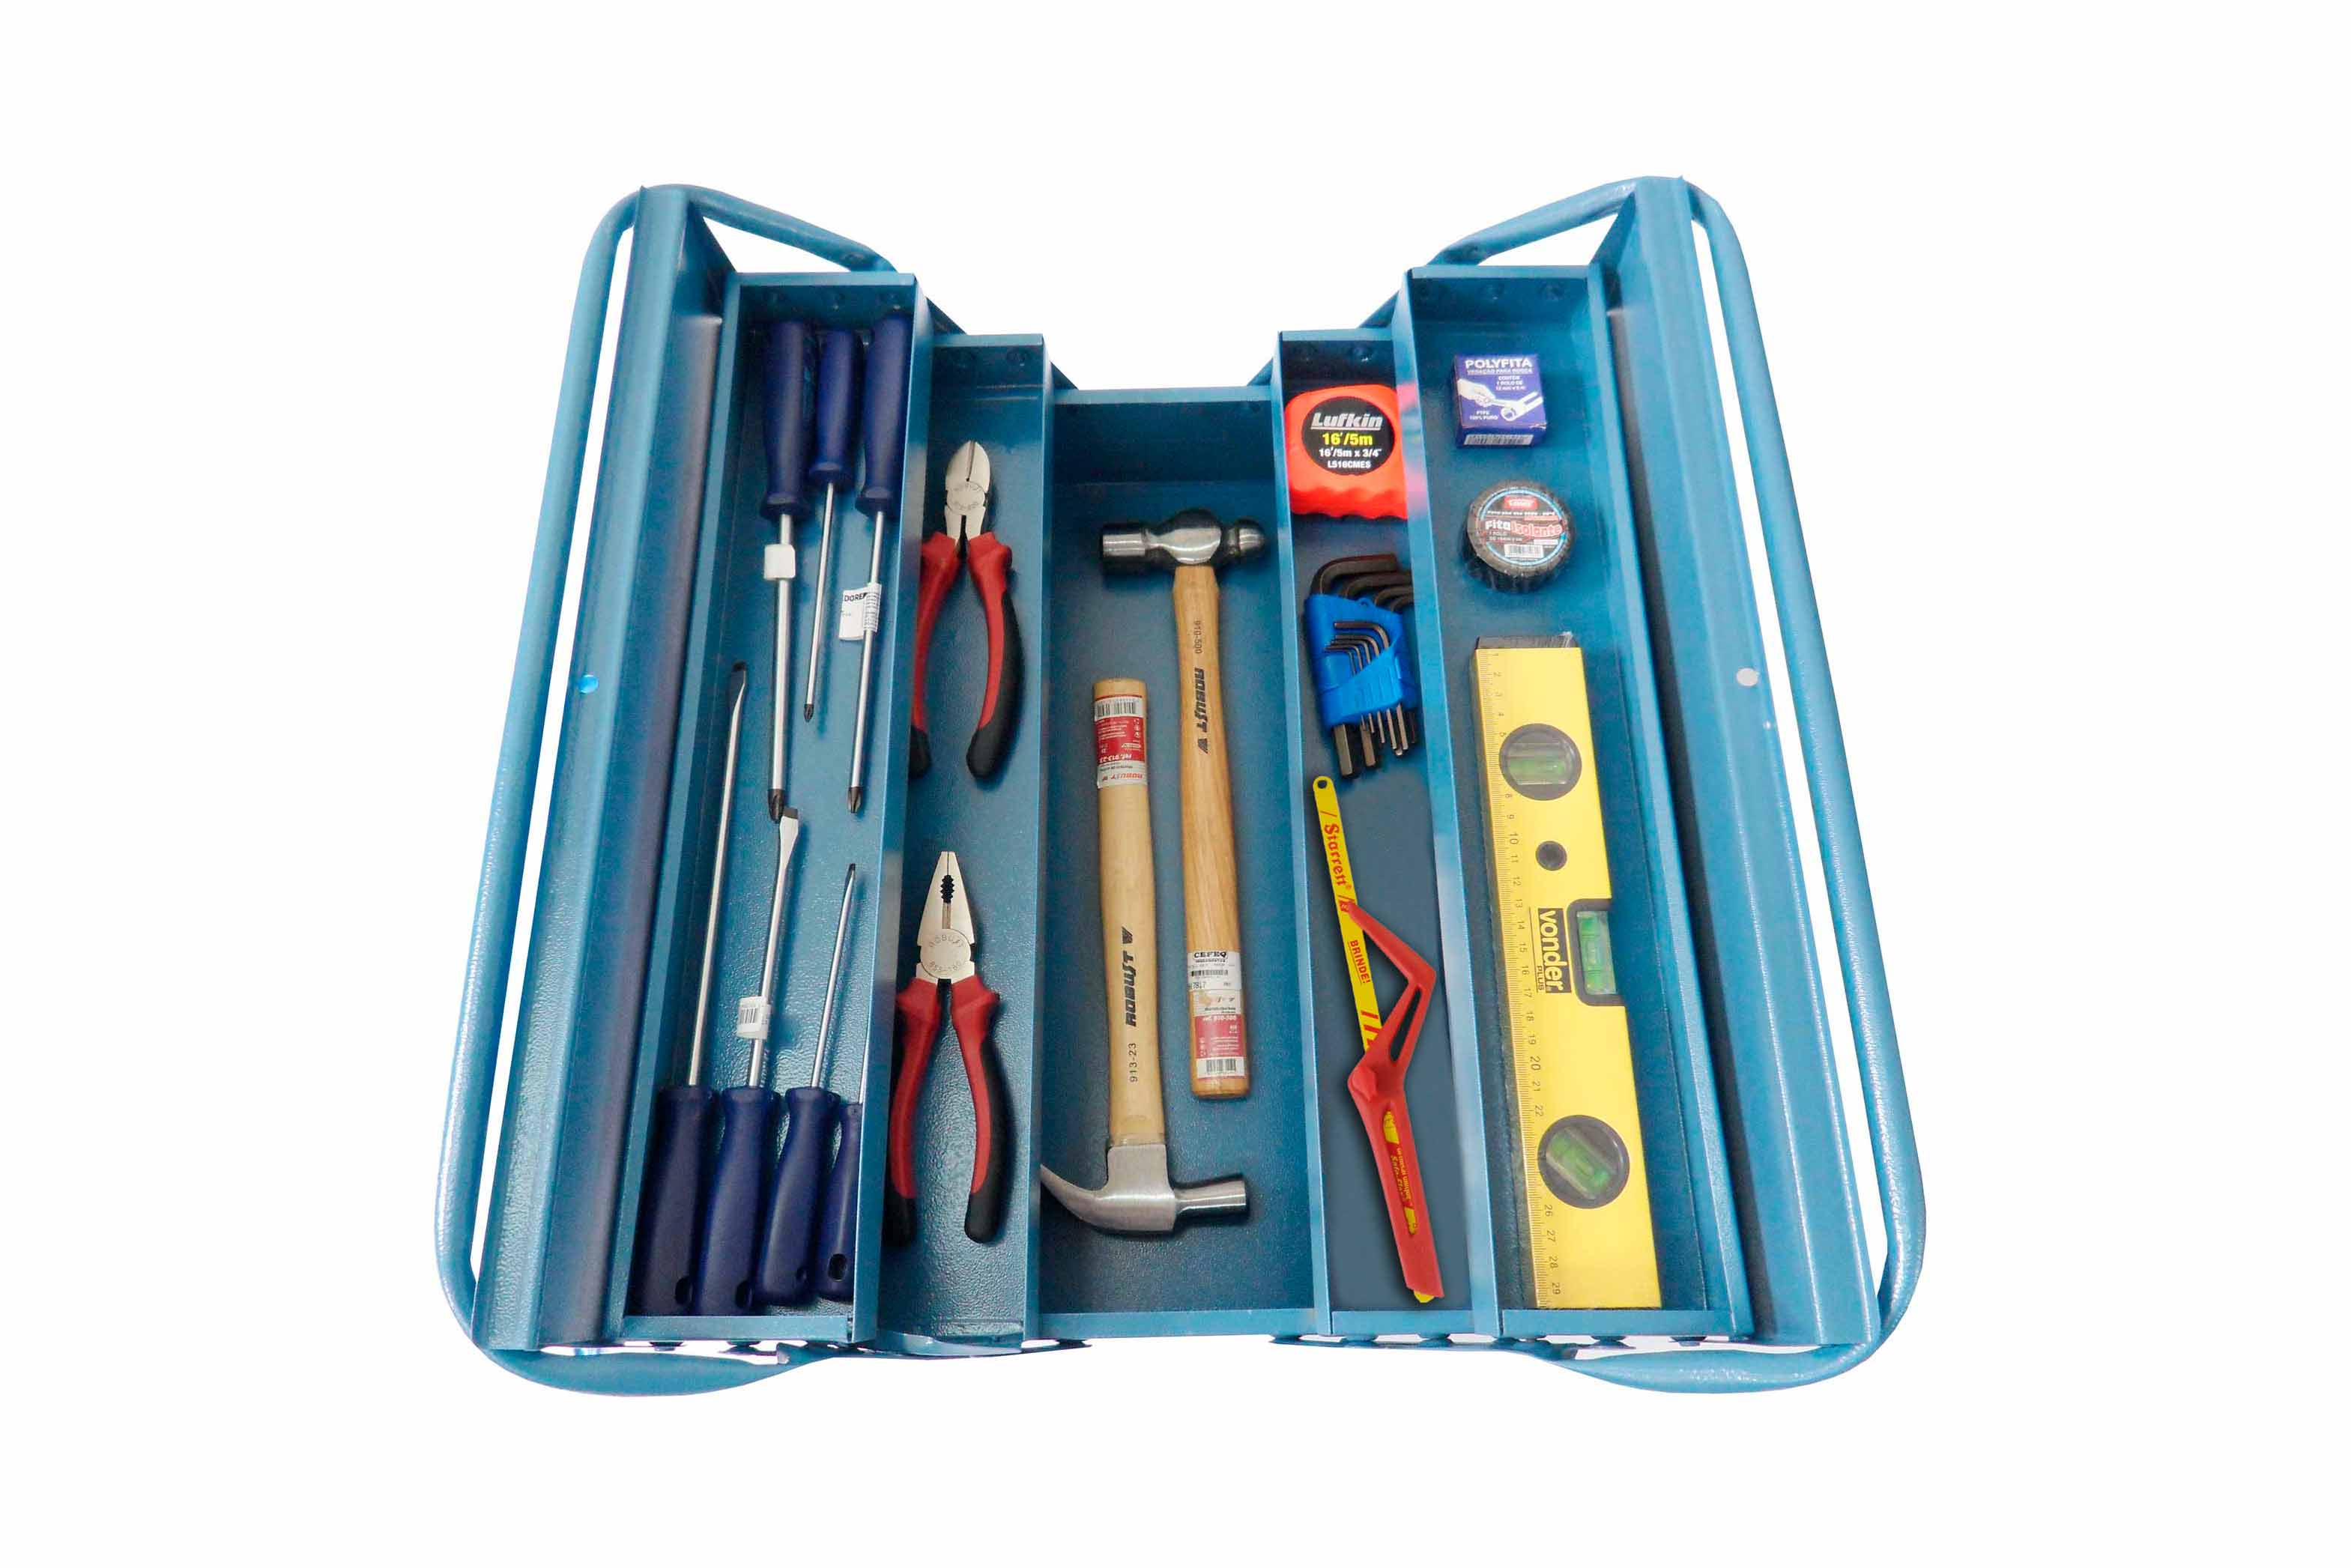 Monte sua caixa de ferramentas para pequenos consertos!